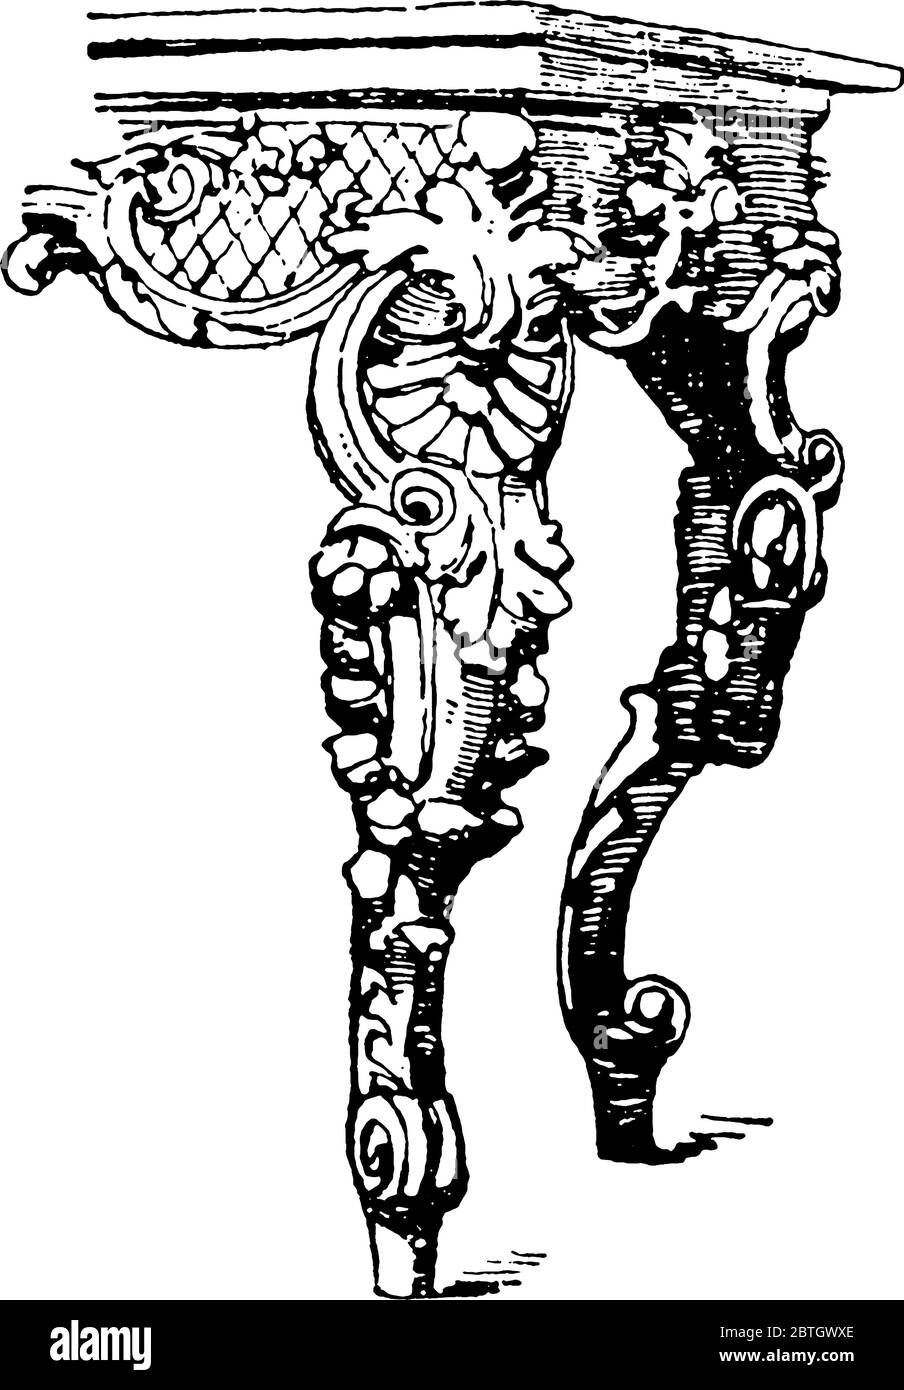 La table française au XVIIIe siècle pendant les périodes Barocco et Rococo avait des jambes courbées et des sommets gras, des dessins de ligne vintage ou de la gravure illustrati Illustration de Vecteur